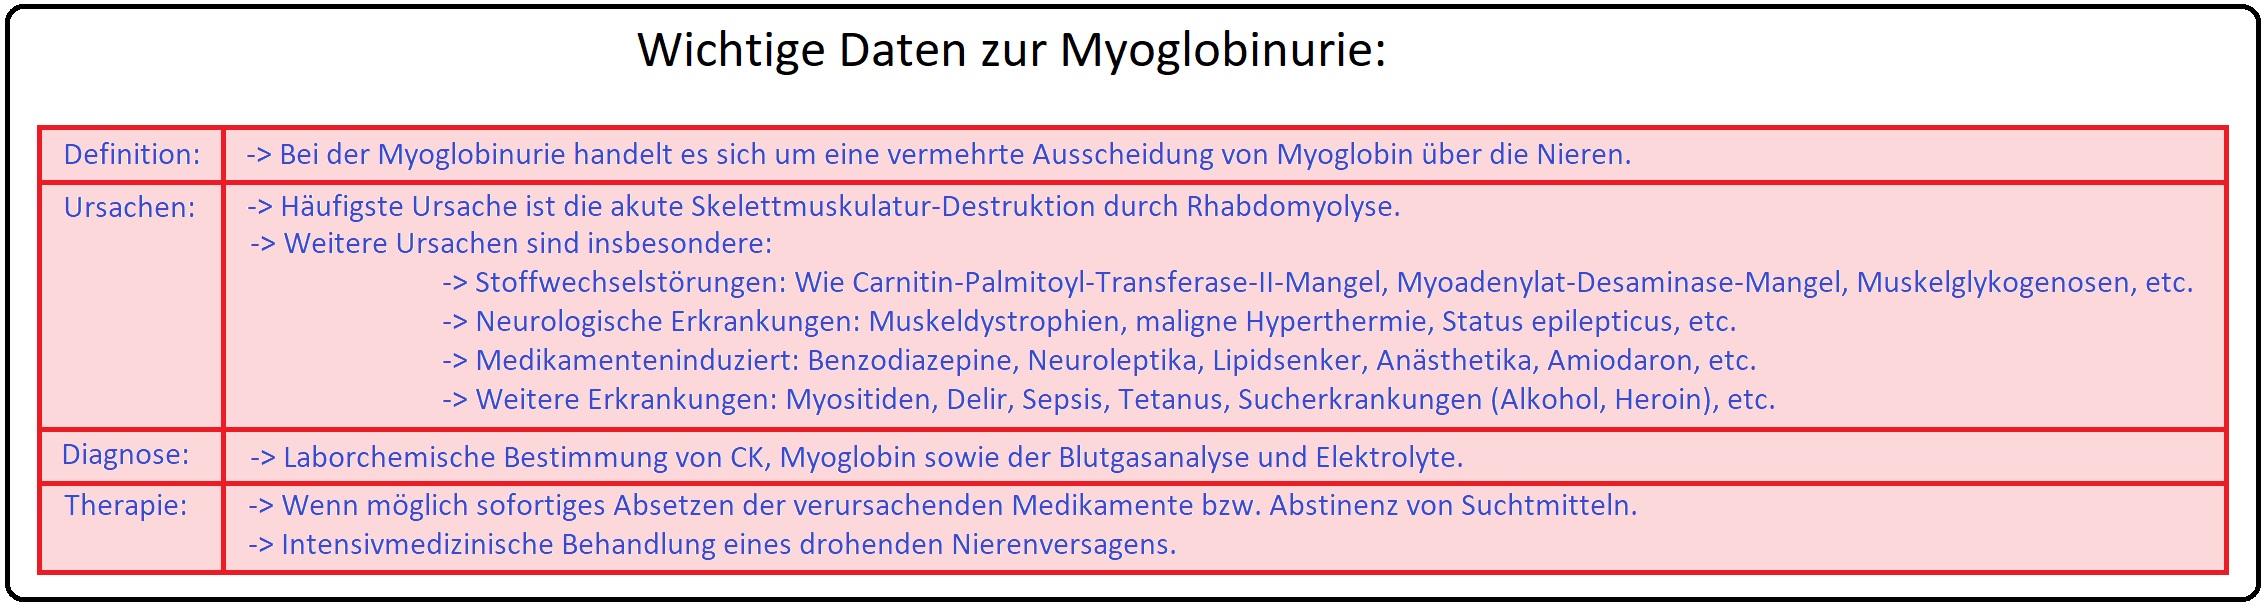 087 Wichtige Daten zur Myoglobinurie